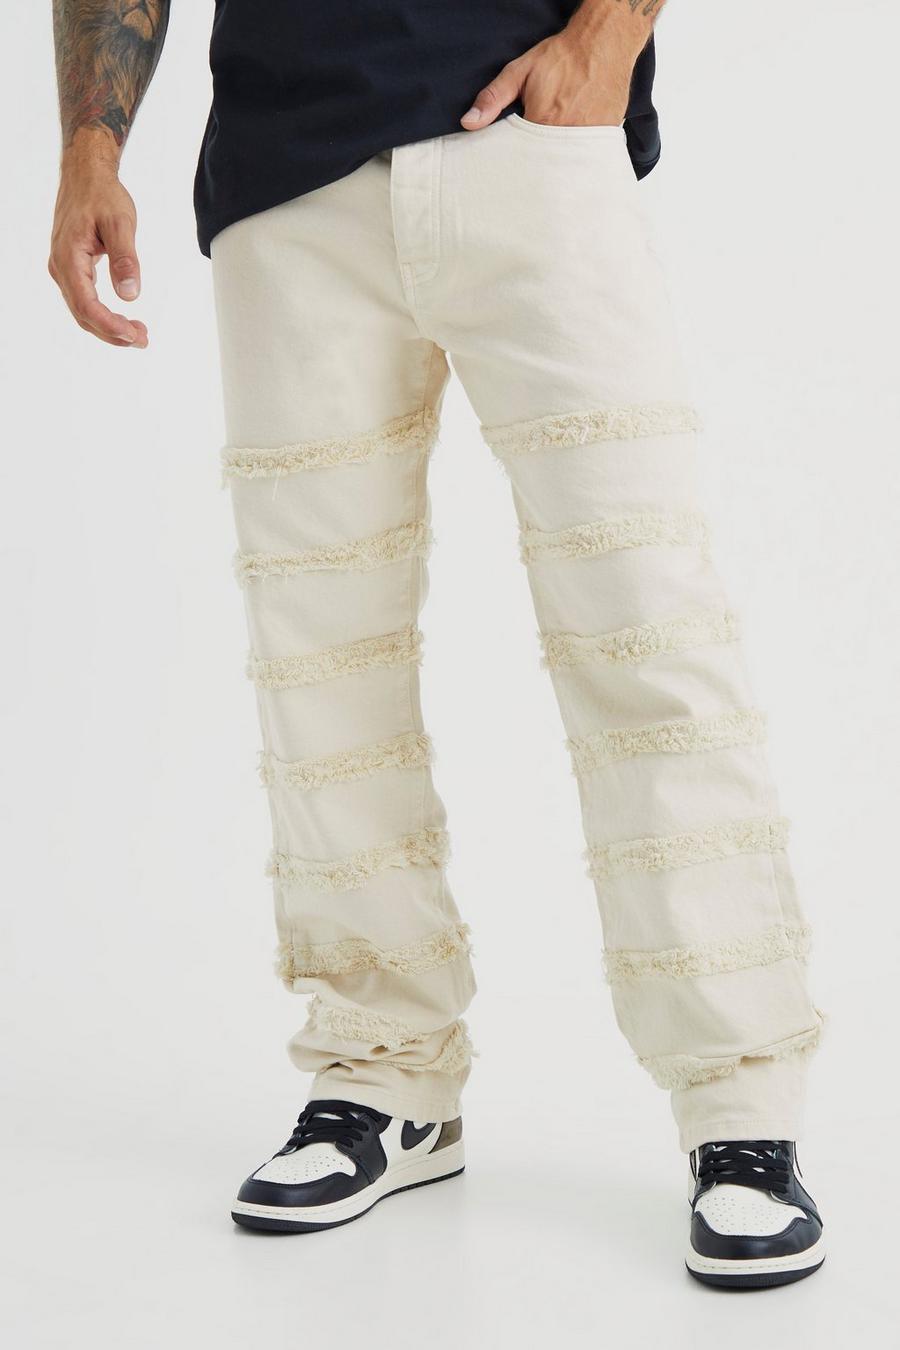 Lockere Jeans mit ausgefranstem Detail, Ecru white